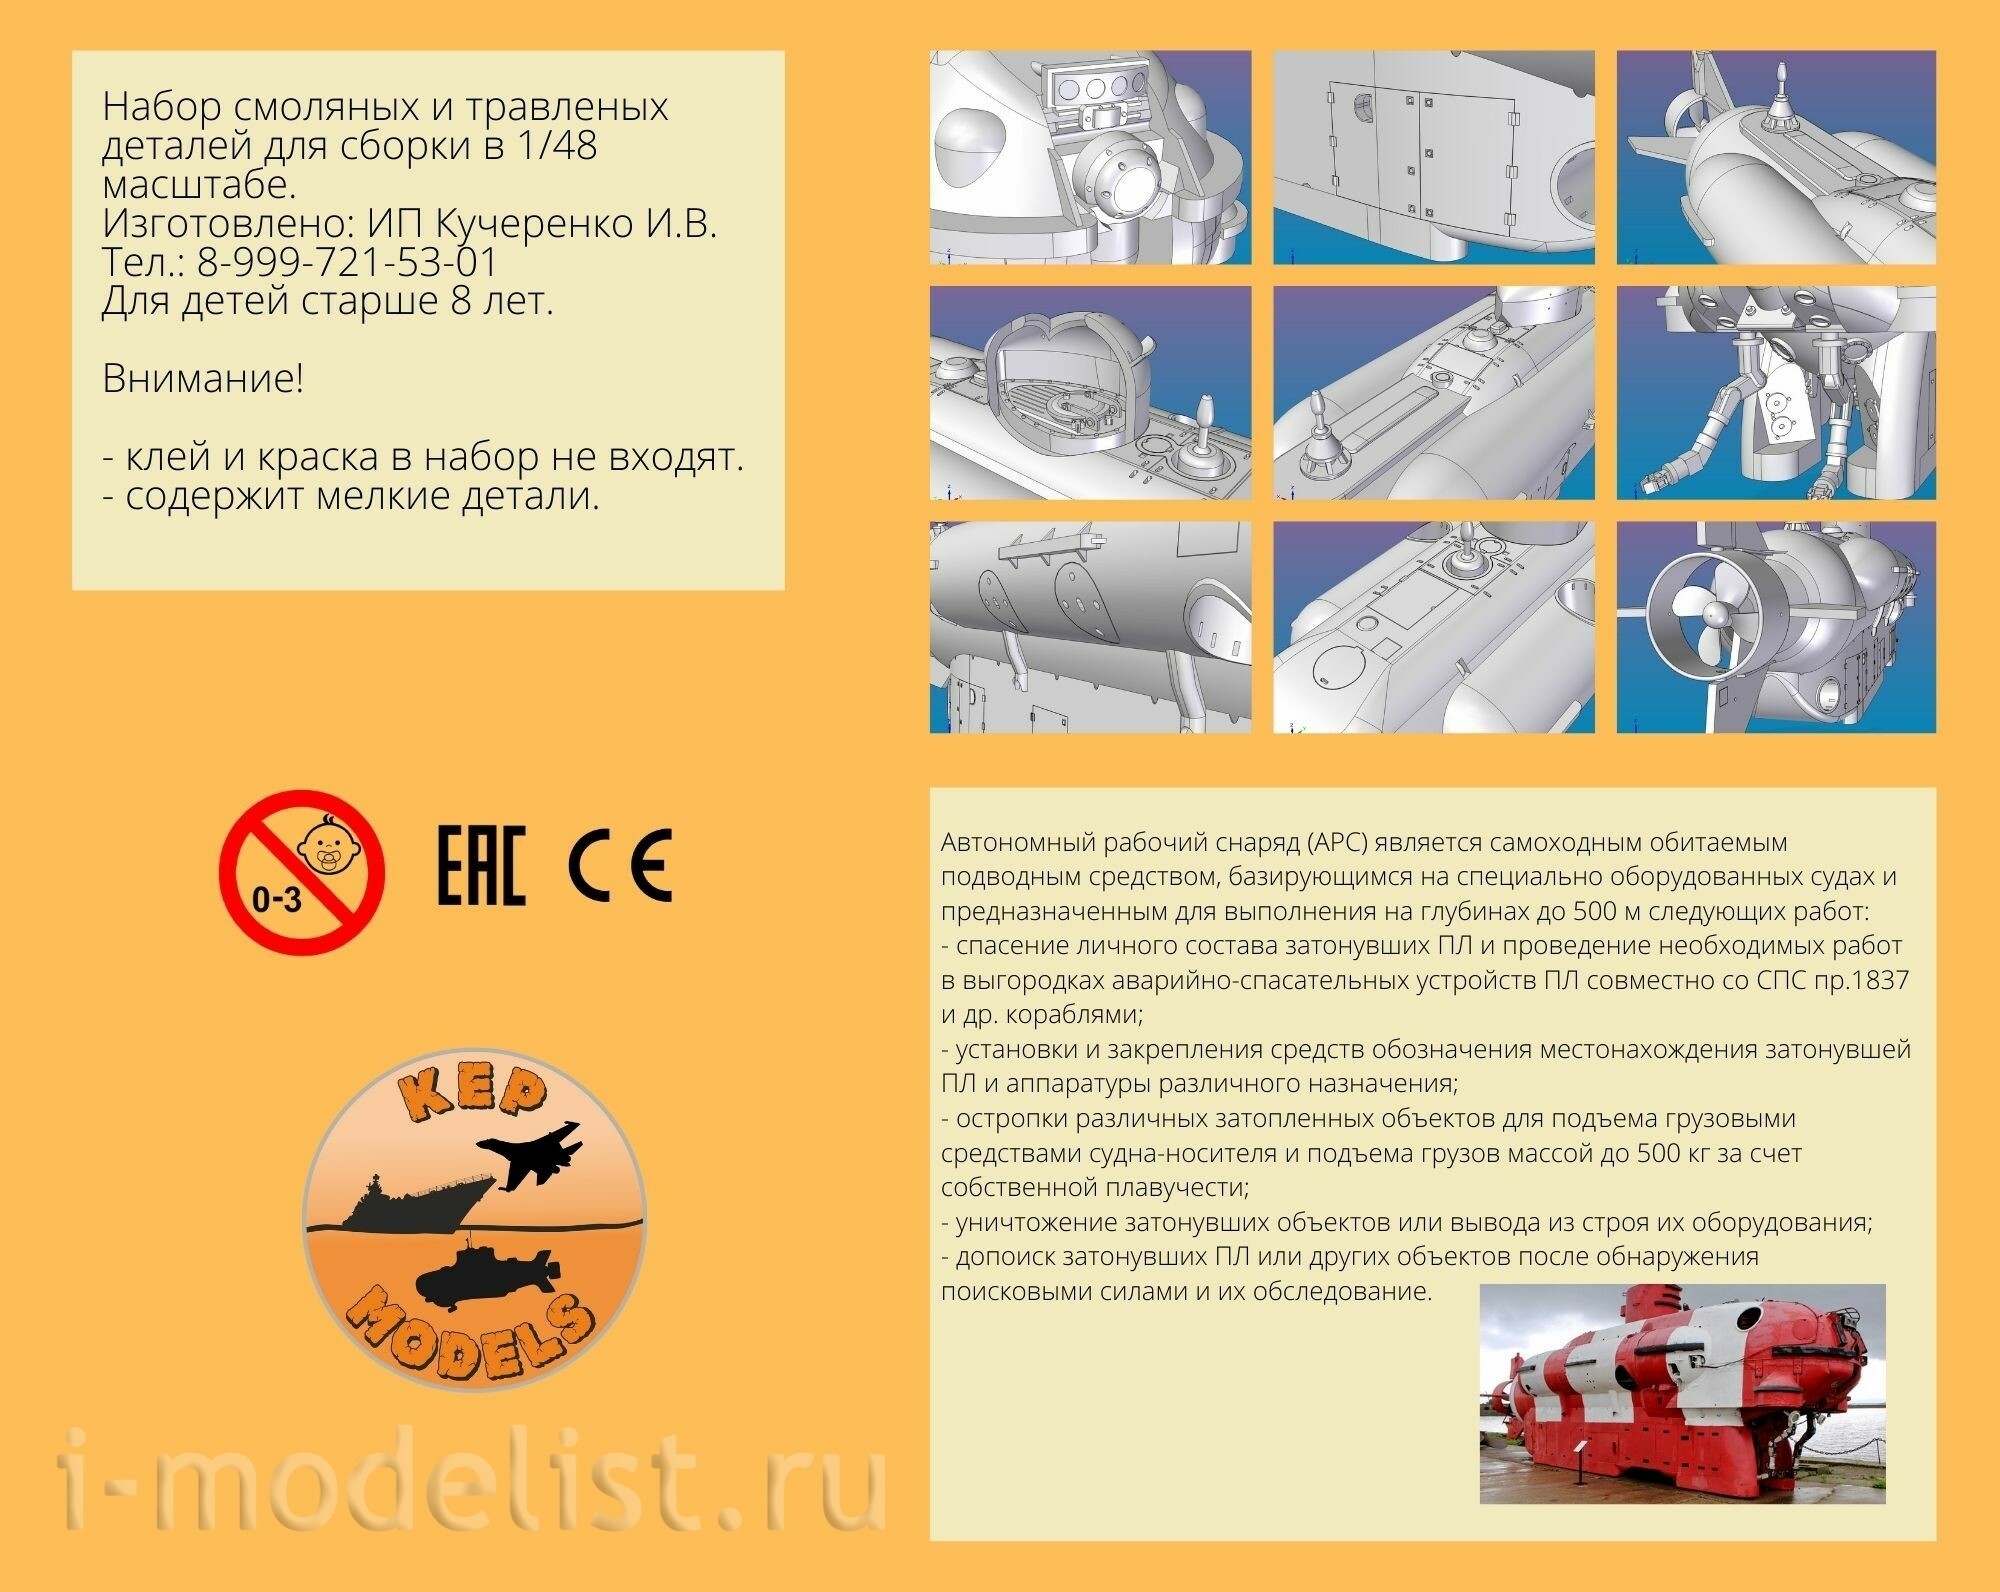 KMW48001 KEPmodels 1/48 Советский подводный спасательный аппарат пр.18392